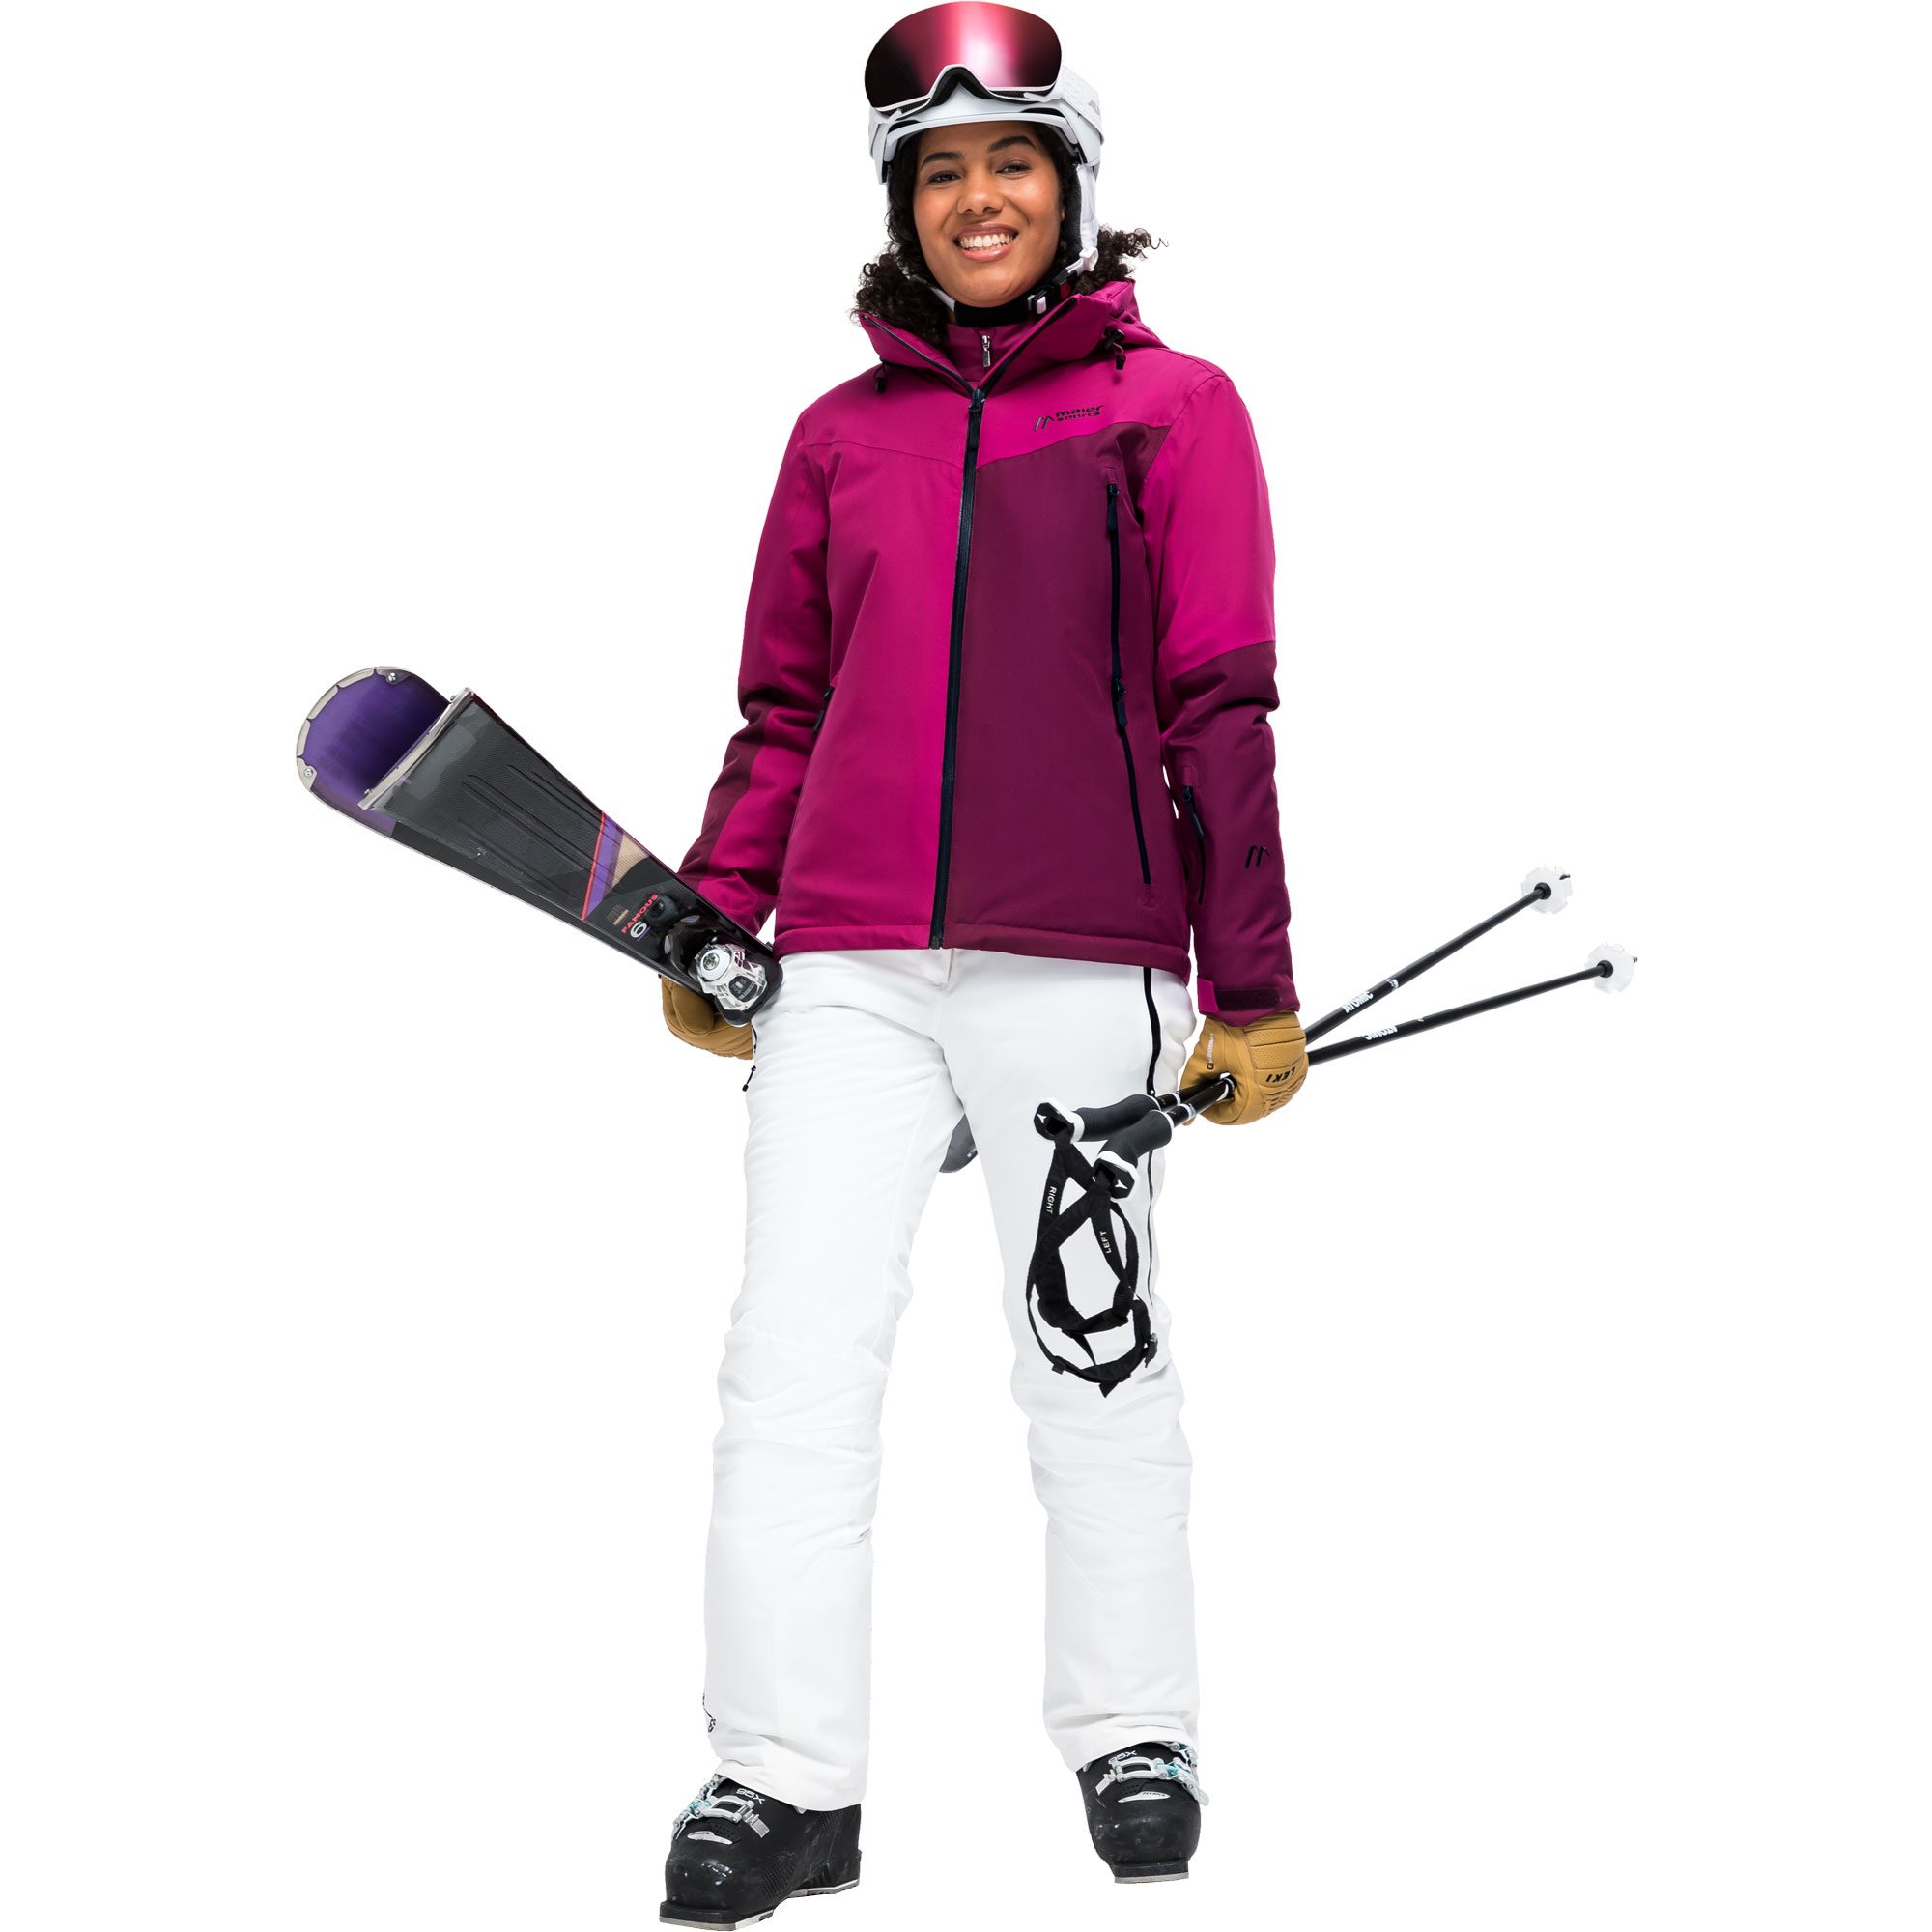 Maier Sports - Nuria Skijacke Damen magenta kaufen im Sport Bittl Shop